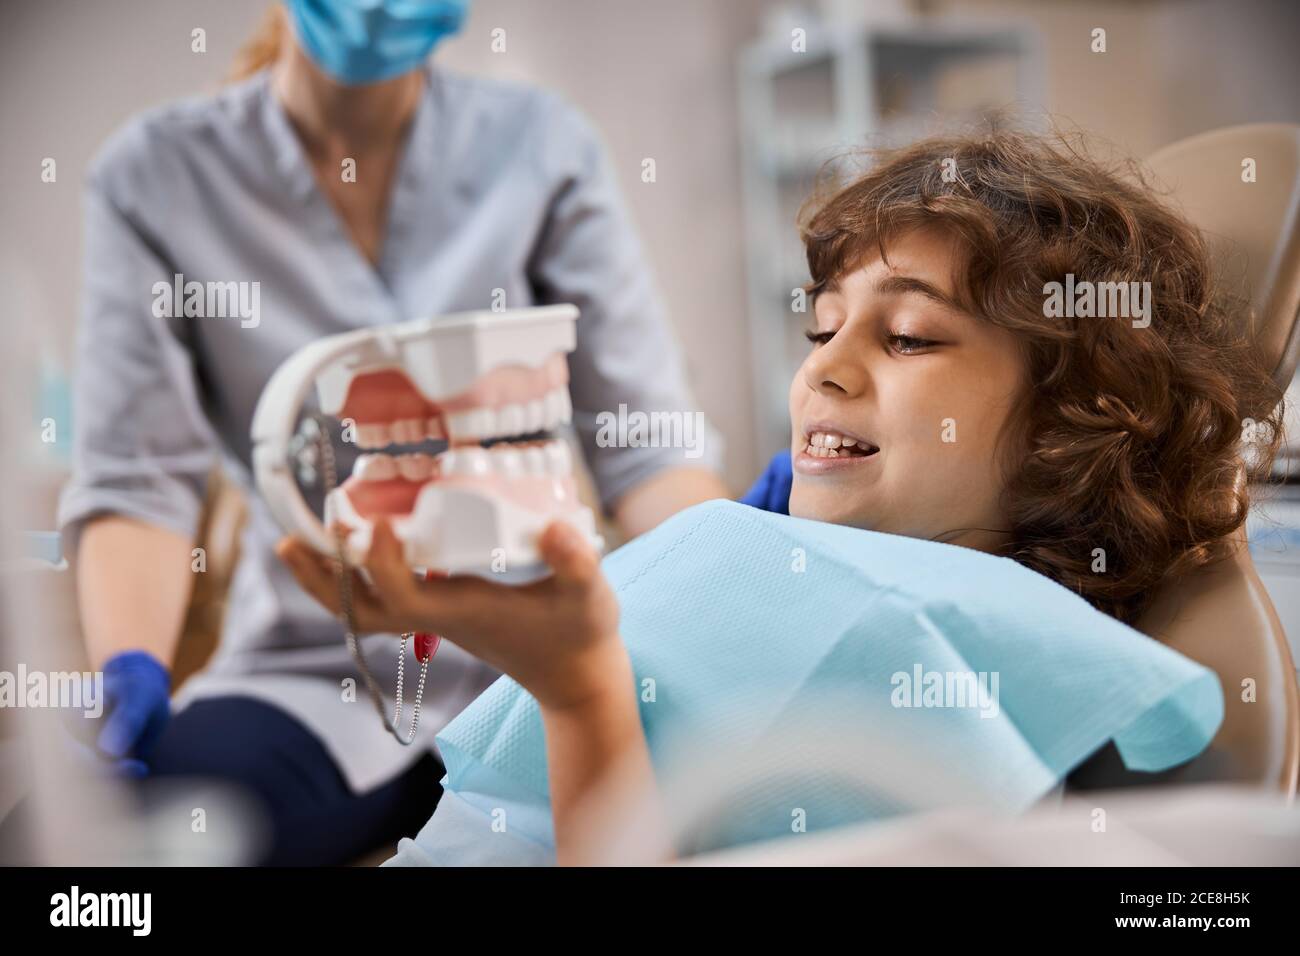 Apprendre l'anatomie des dents est tellement amusant Banque D'Images